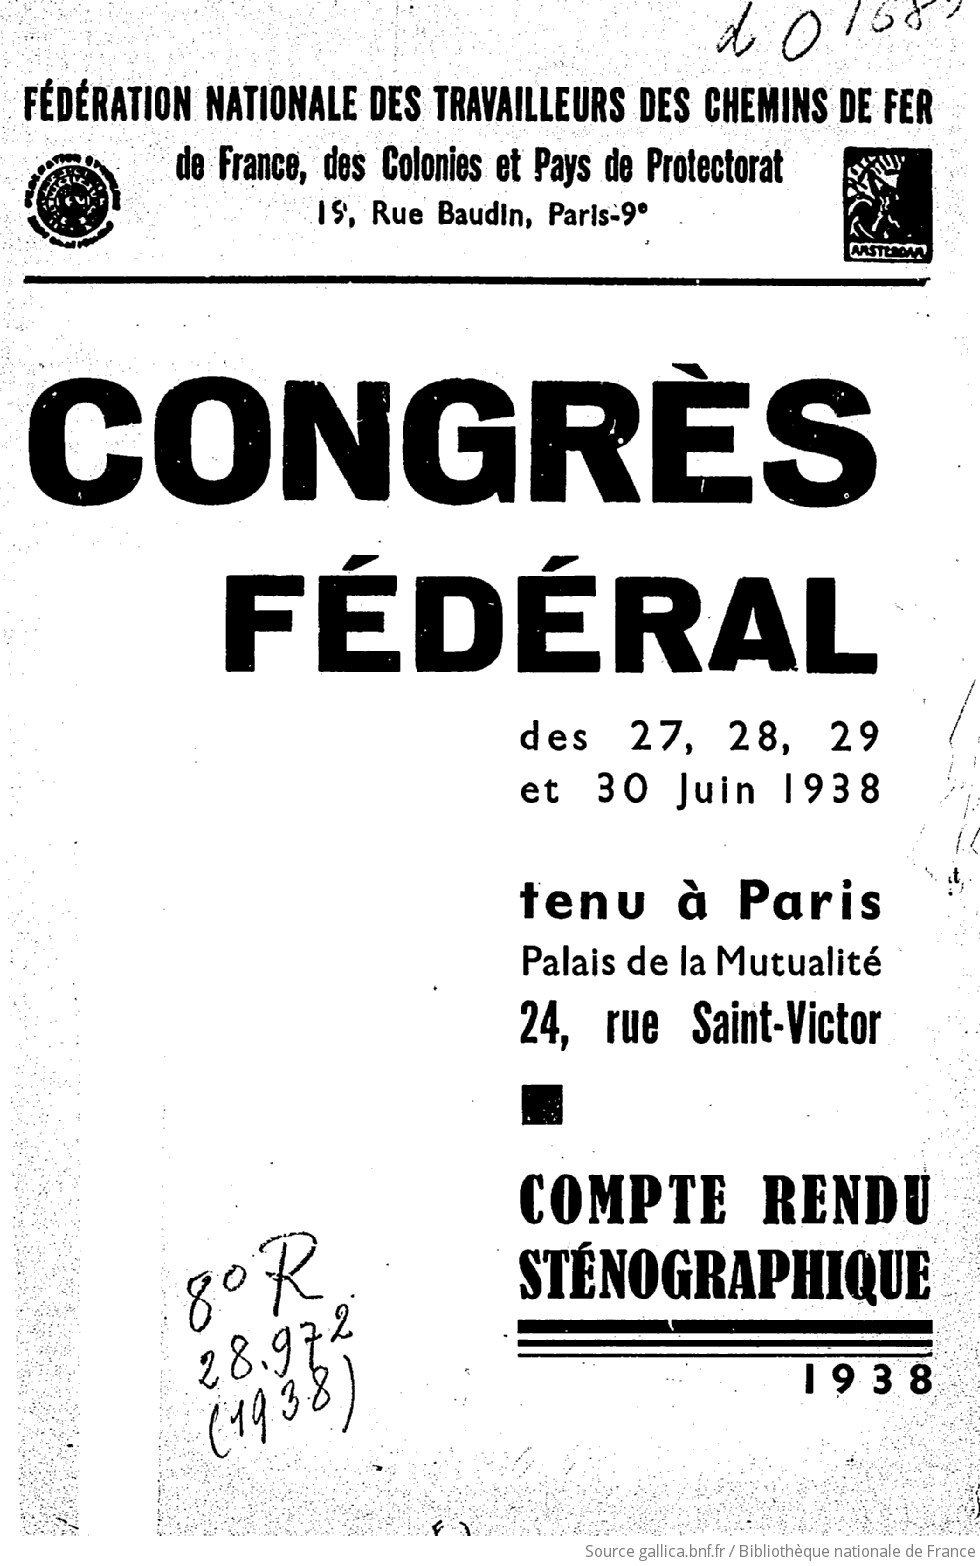 [17e] Congrès fédéral des 27, 28, 29 et 30 juin 1938, tenu à Paris, Palais de la Mutualité : compte-rendu sténographique